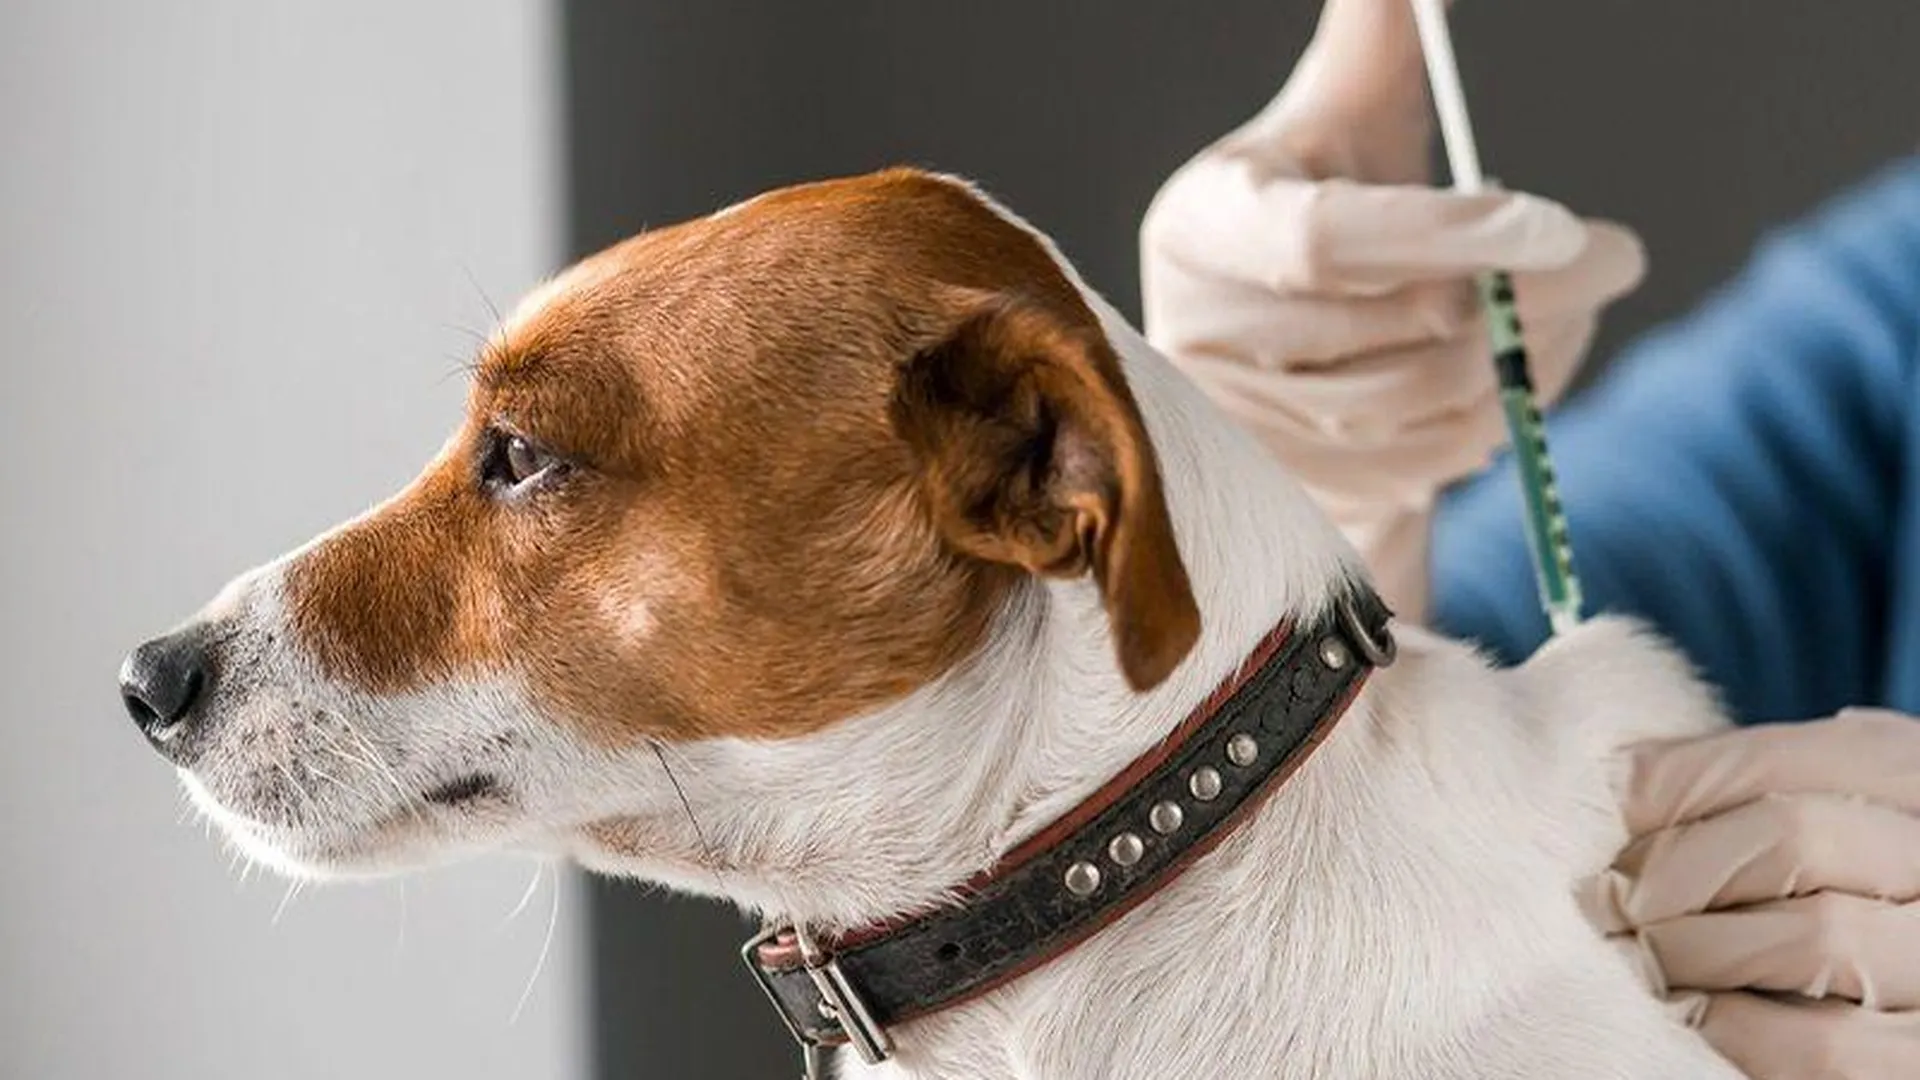 Горожане пожаловались на халатное обращение с животными в клинике Хотьково